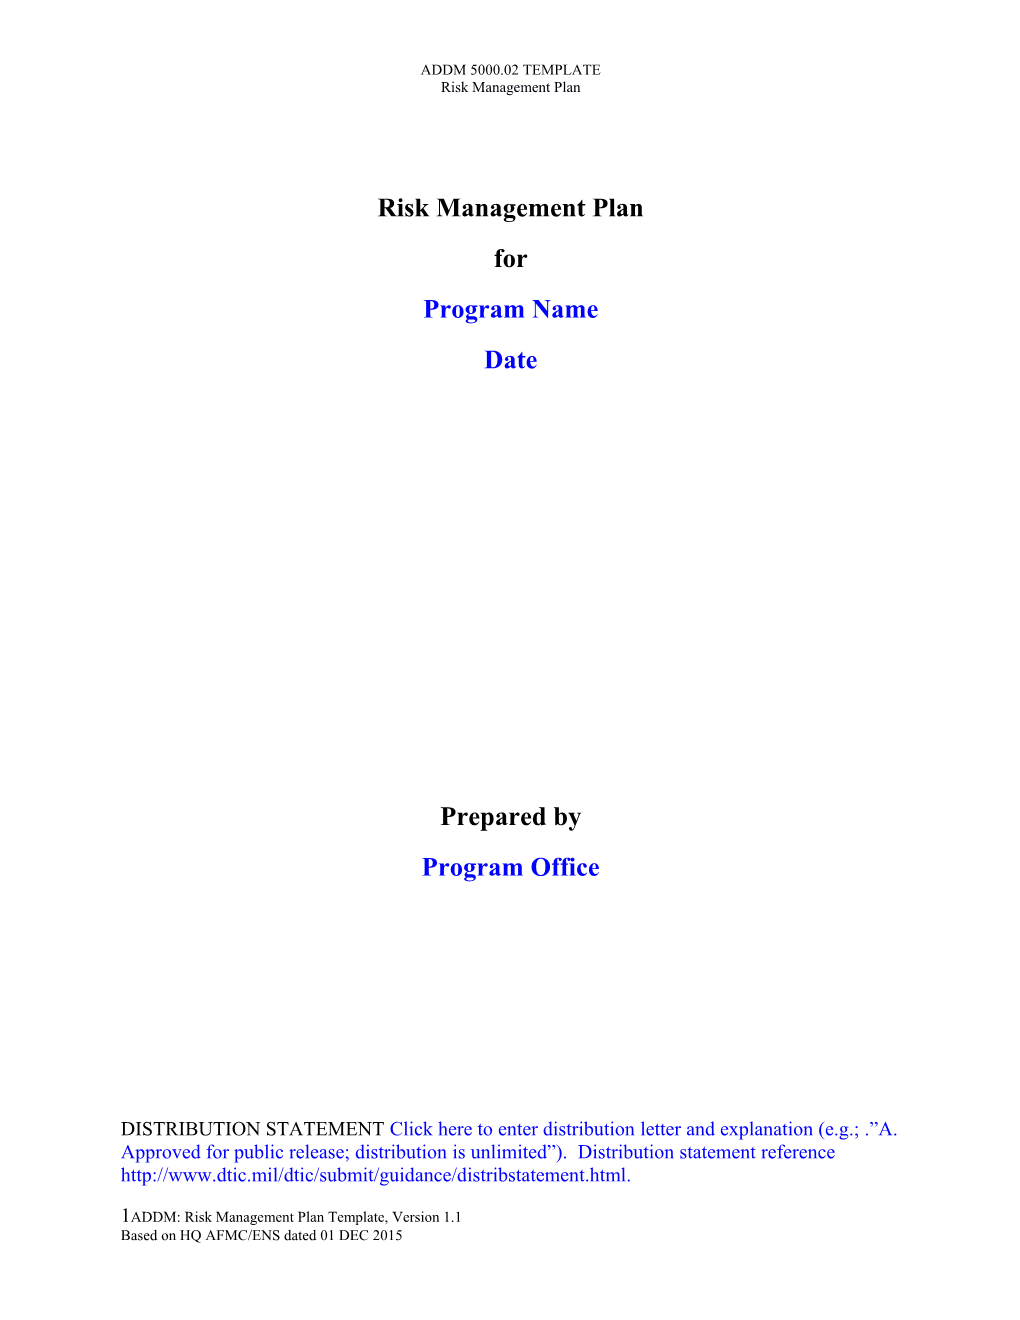 Risk Management Plan - ADDM Template V 1.1